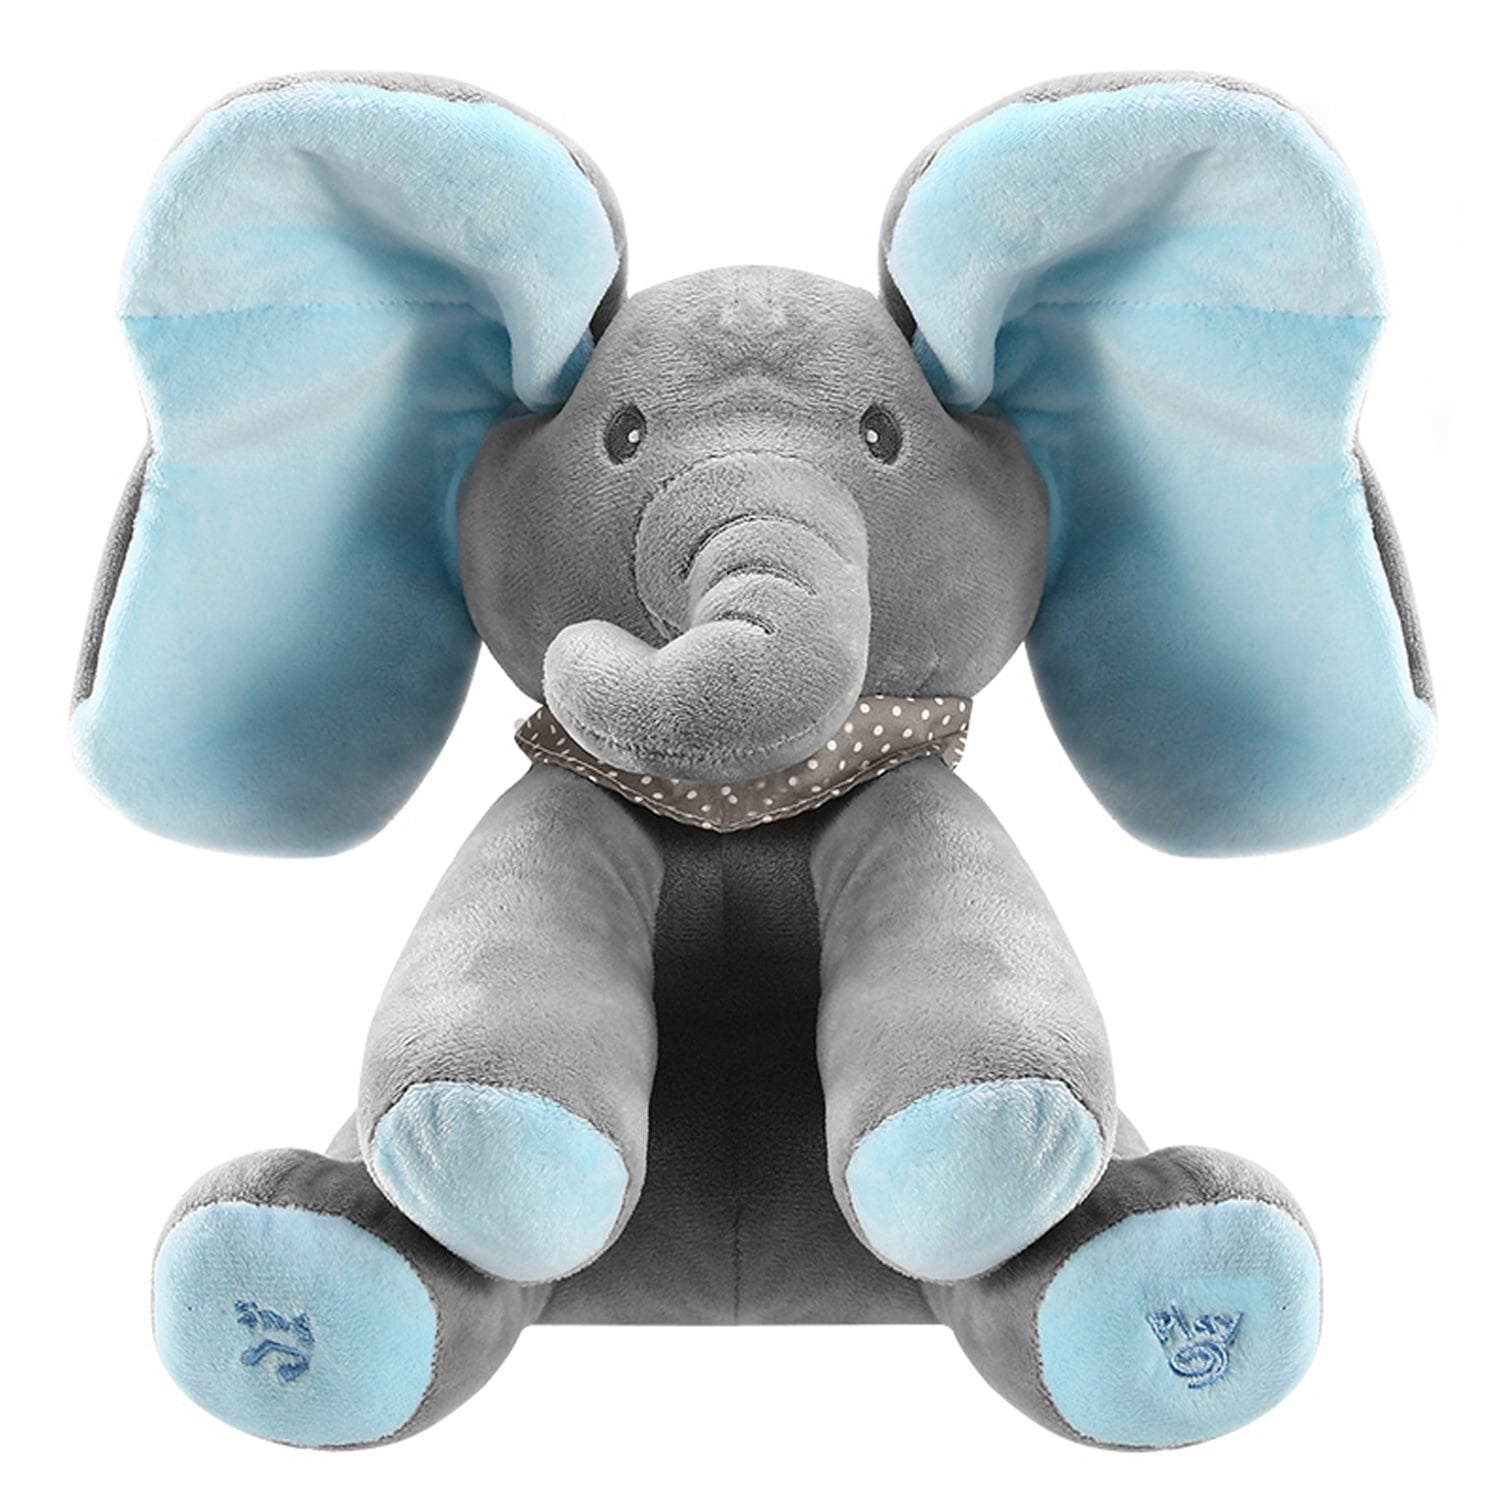 elephant toy peek a boo